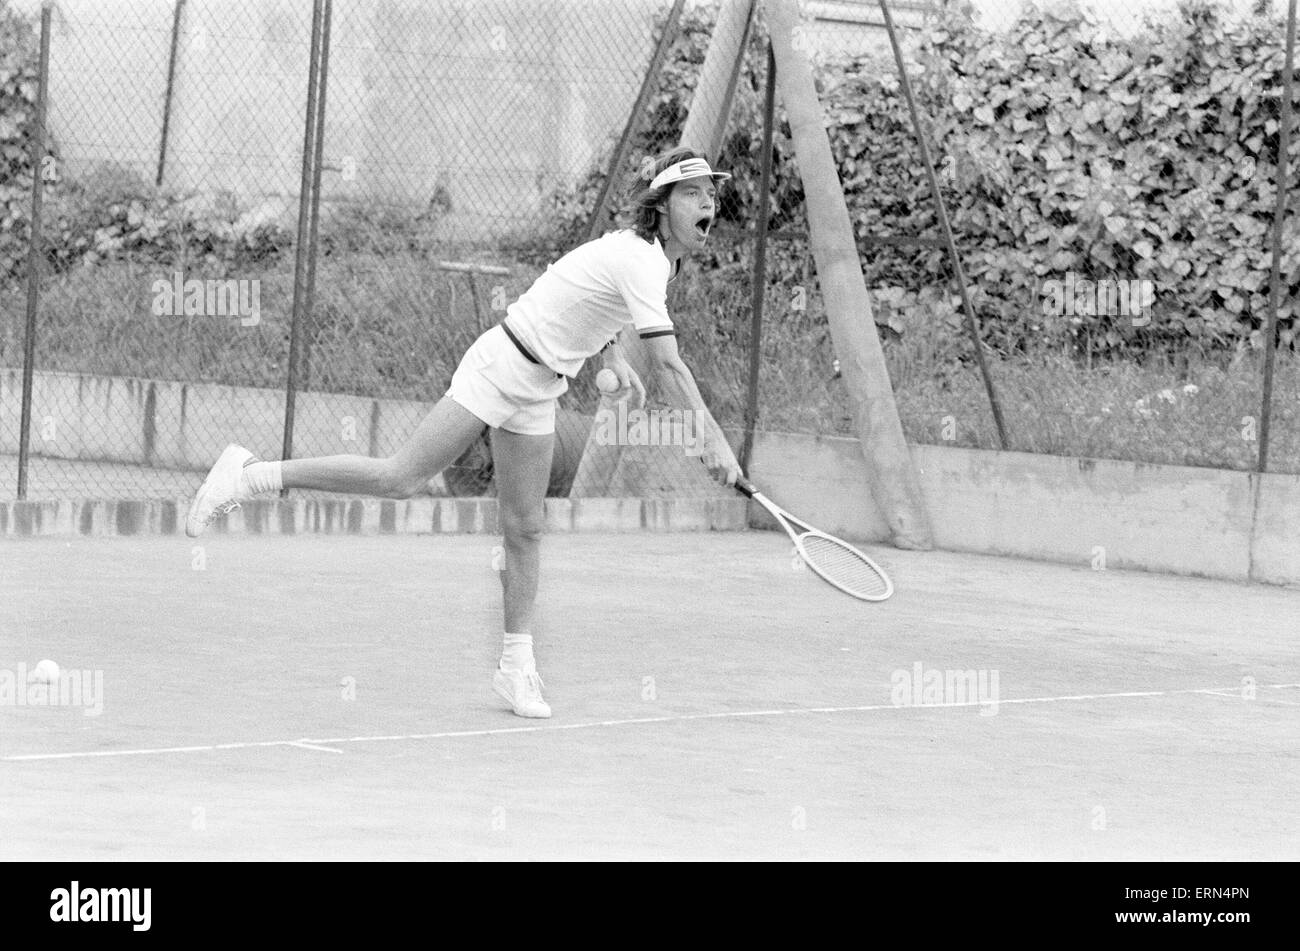 Mick Jagger e Ron Wood, si prende il tempo per rilassarsi nel sud della Francia, giocando a tennis, prima dell'inizio del Rolling Stones Tour Europeo (inizia a Francoforte il 28 aprile), raffigurato sabato 22 aprile 1976. Foto Stock